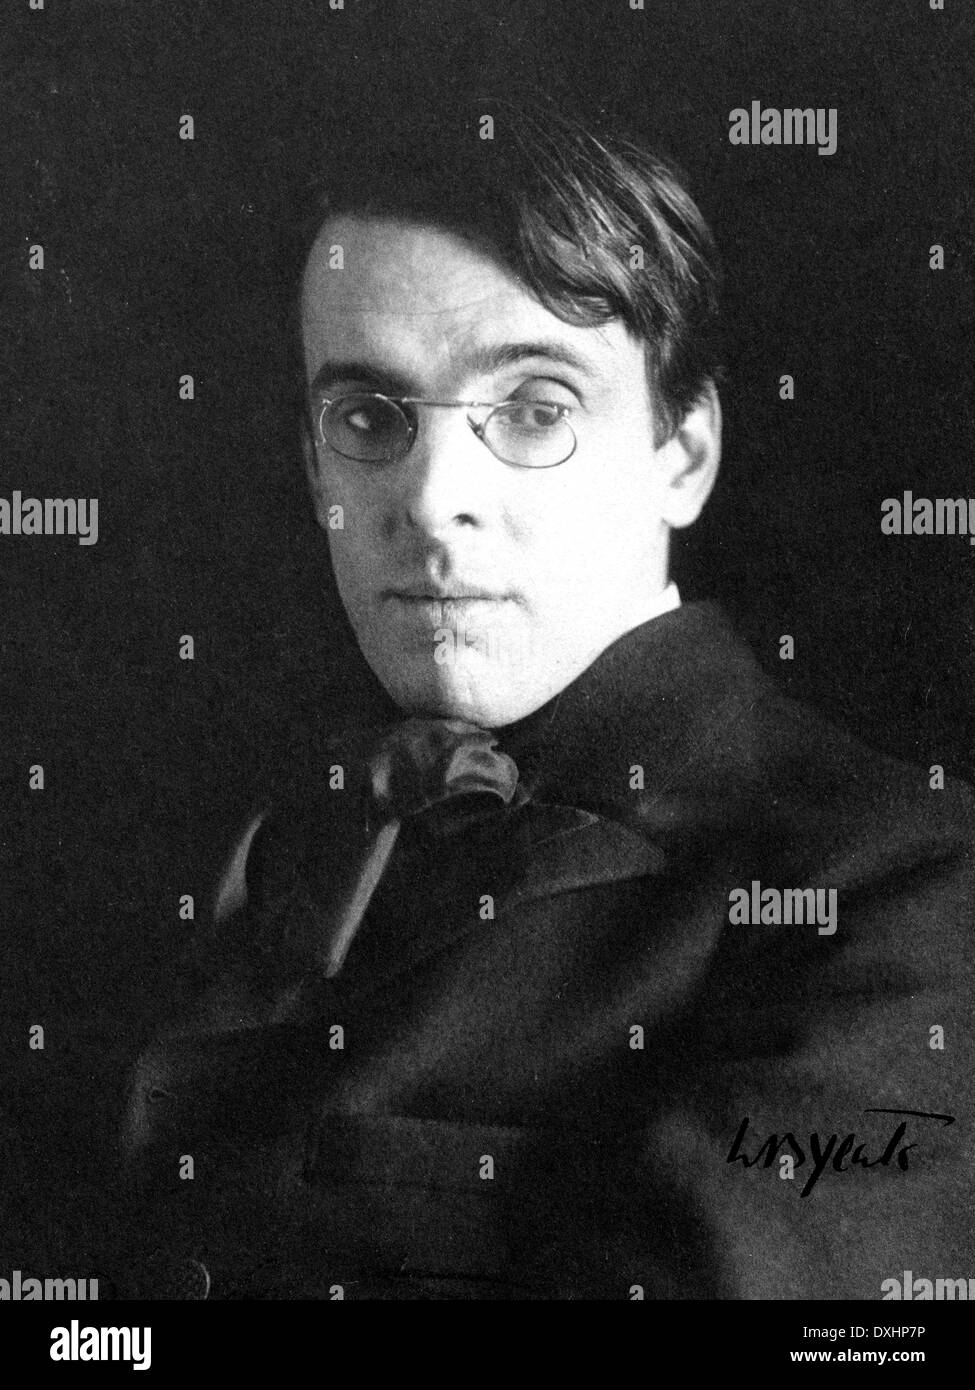 W.B. YEATS (1865-1939) poeta irlandese nel 1903. Foto di Alice San Donato Foto Stock